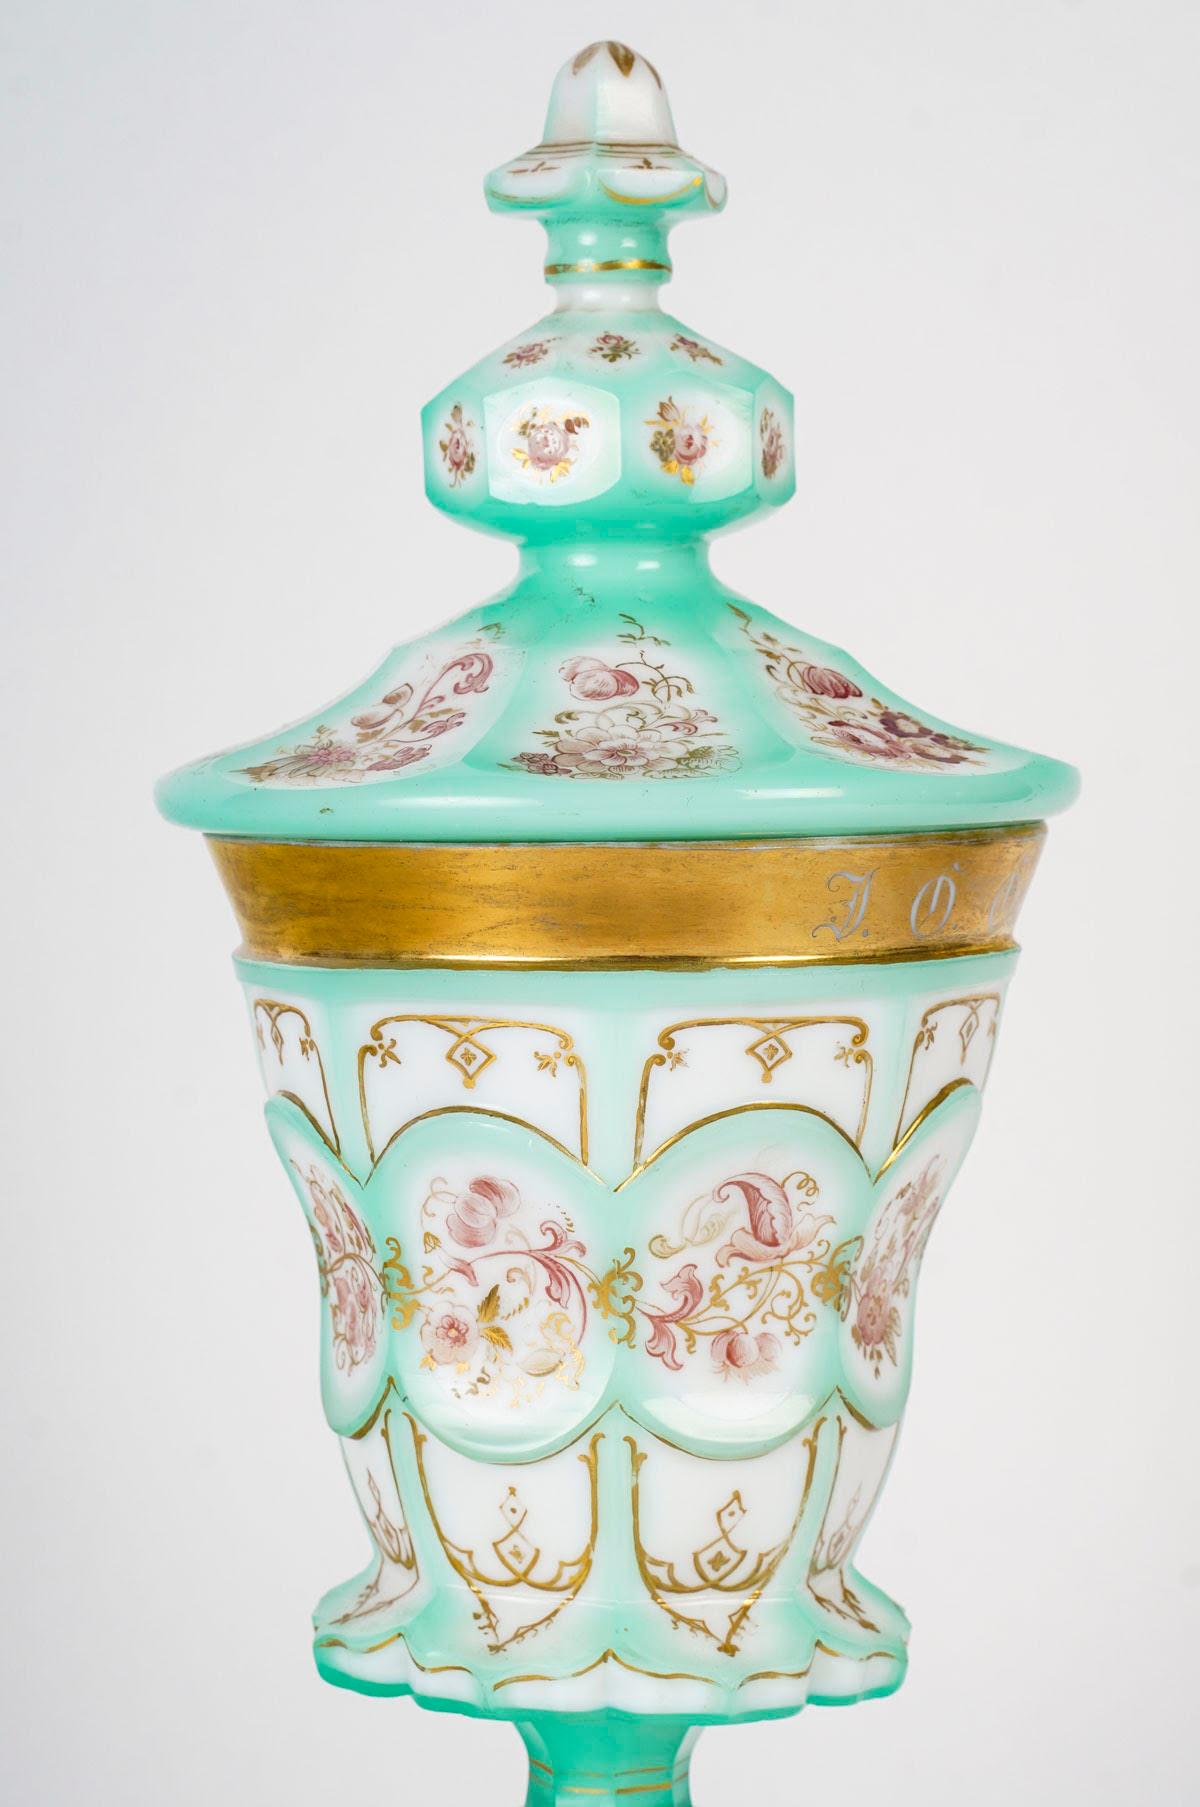 Großer Pokal mit Opaleinlage, 19. Jahrhundert, Periode Napoleon III.

Pokal aus dem 19. Jahrhundert, Periode Napoleon III, aus Overlay-Opal.
h: 37cm, T: 13,5cm